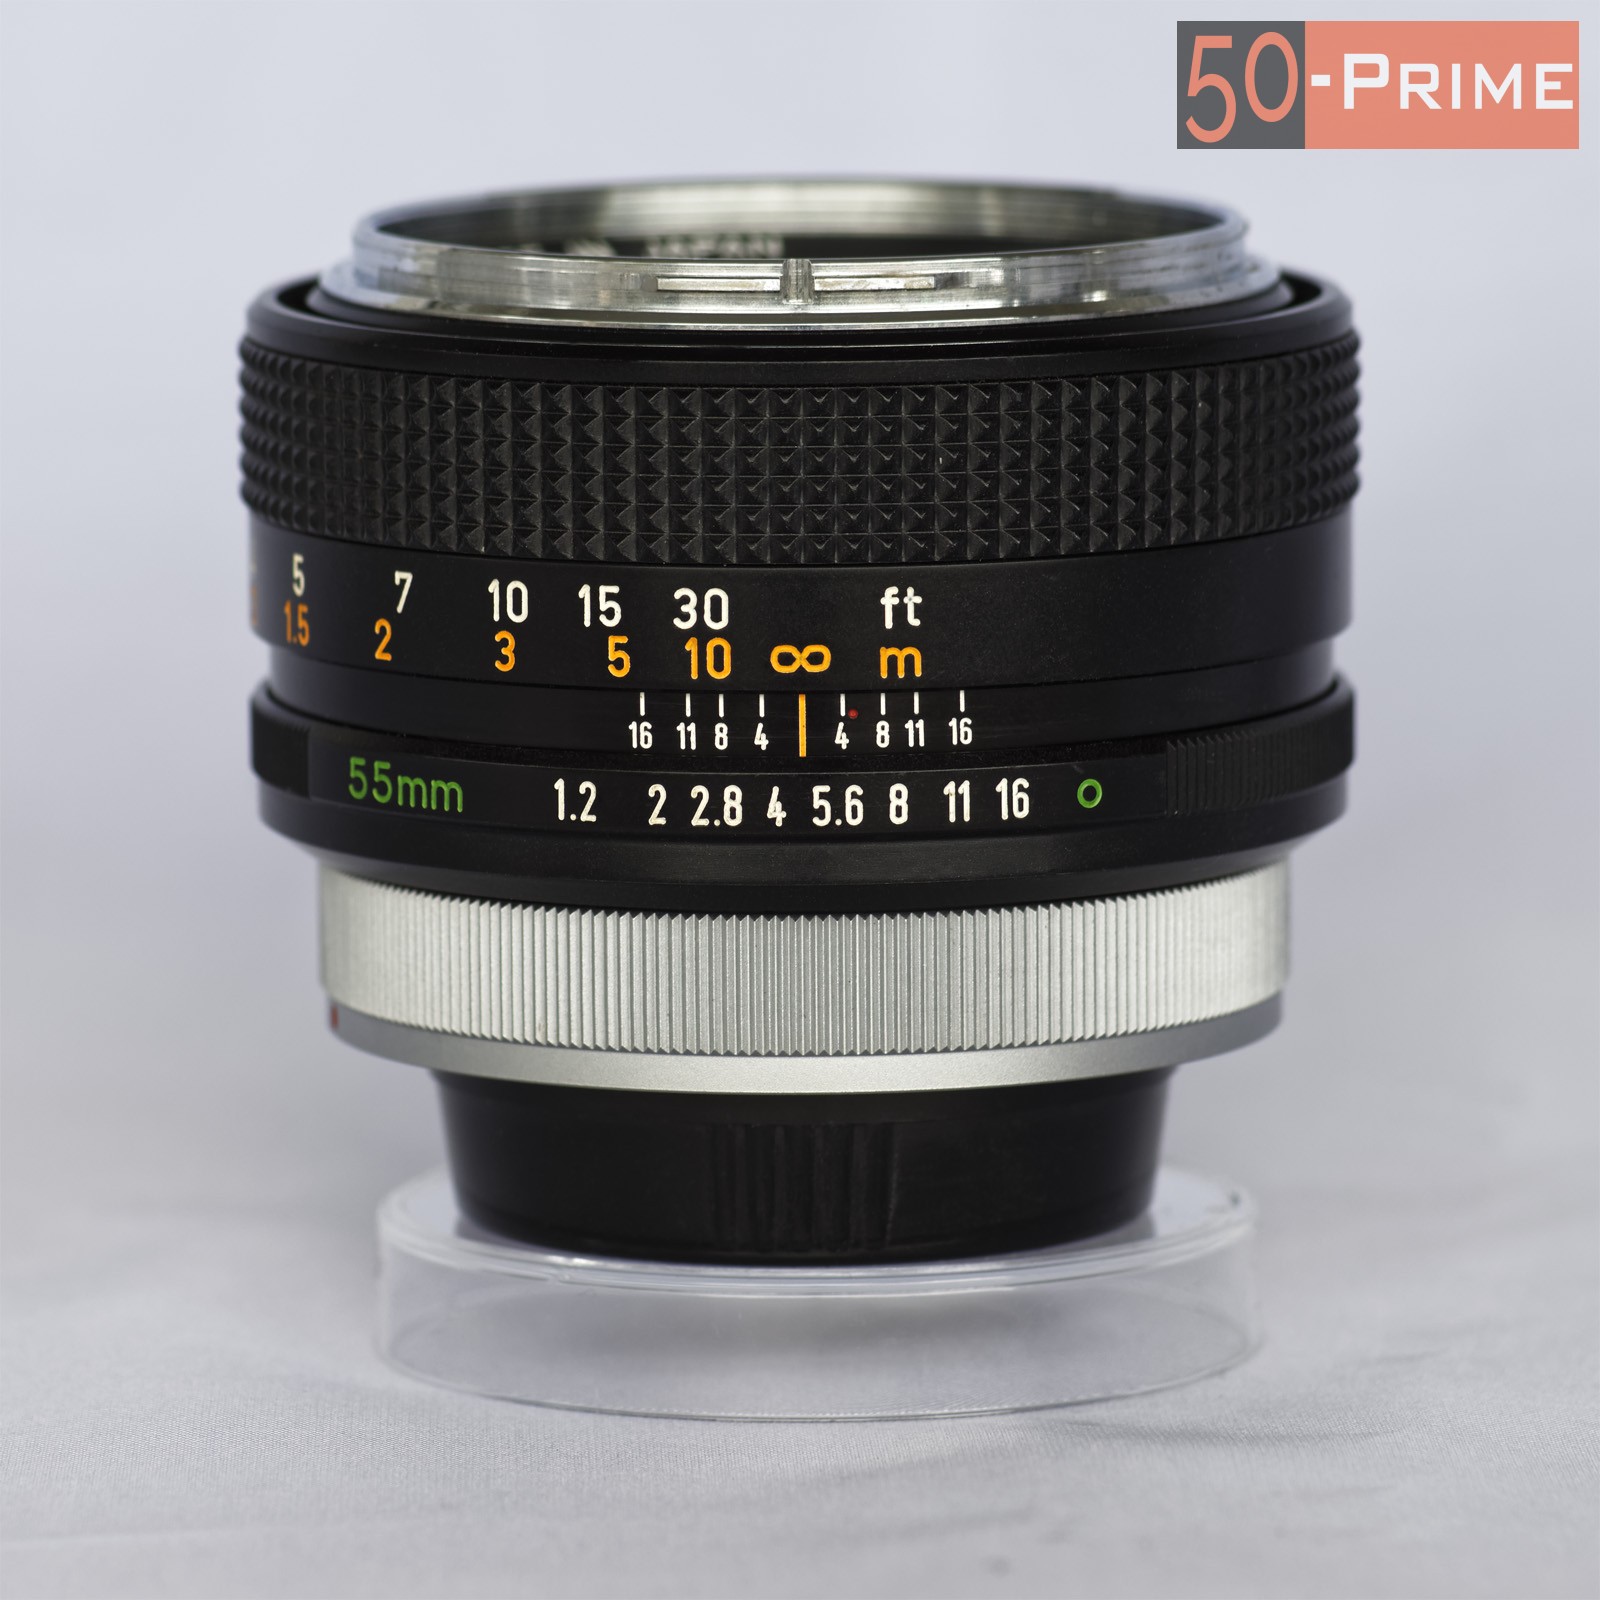 Canon FD 55mm f/1.2 - 50-Prime